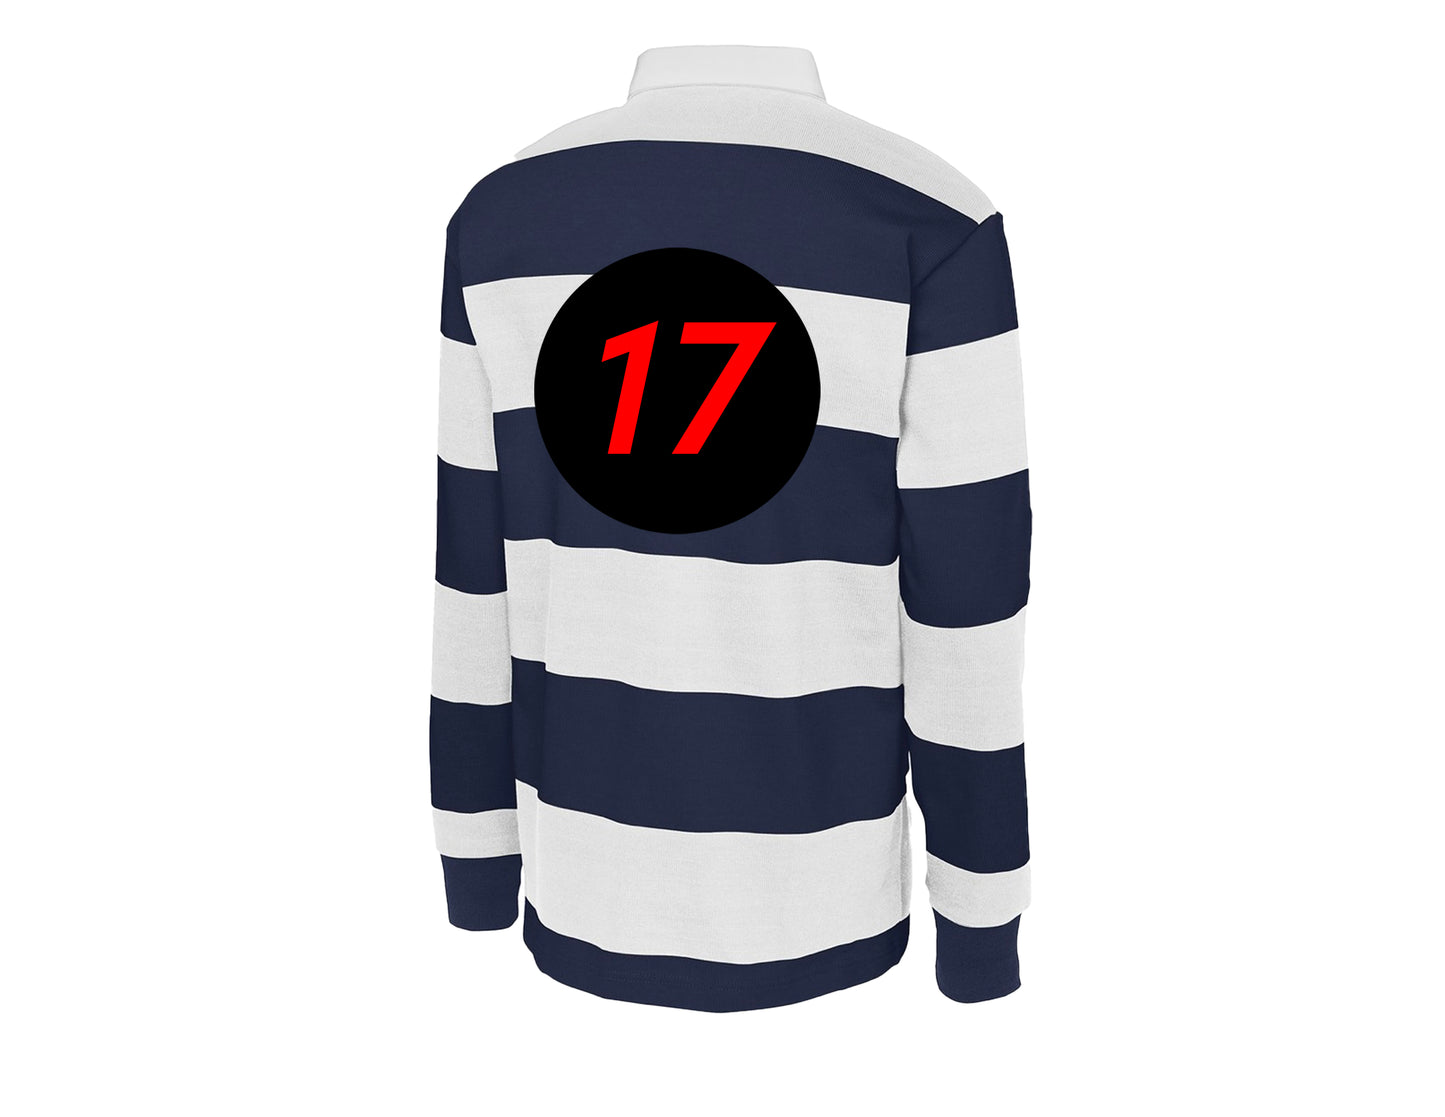 "Digital Dash" Rugby Shirt